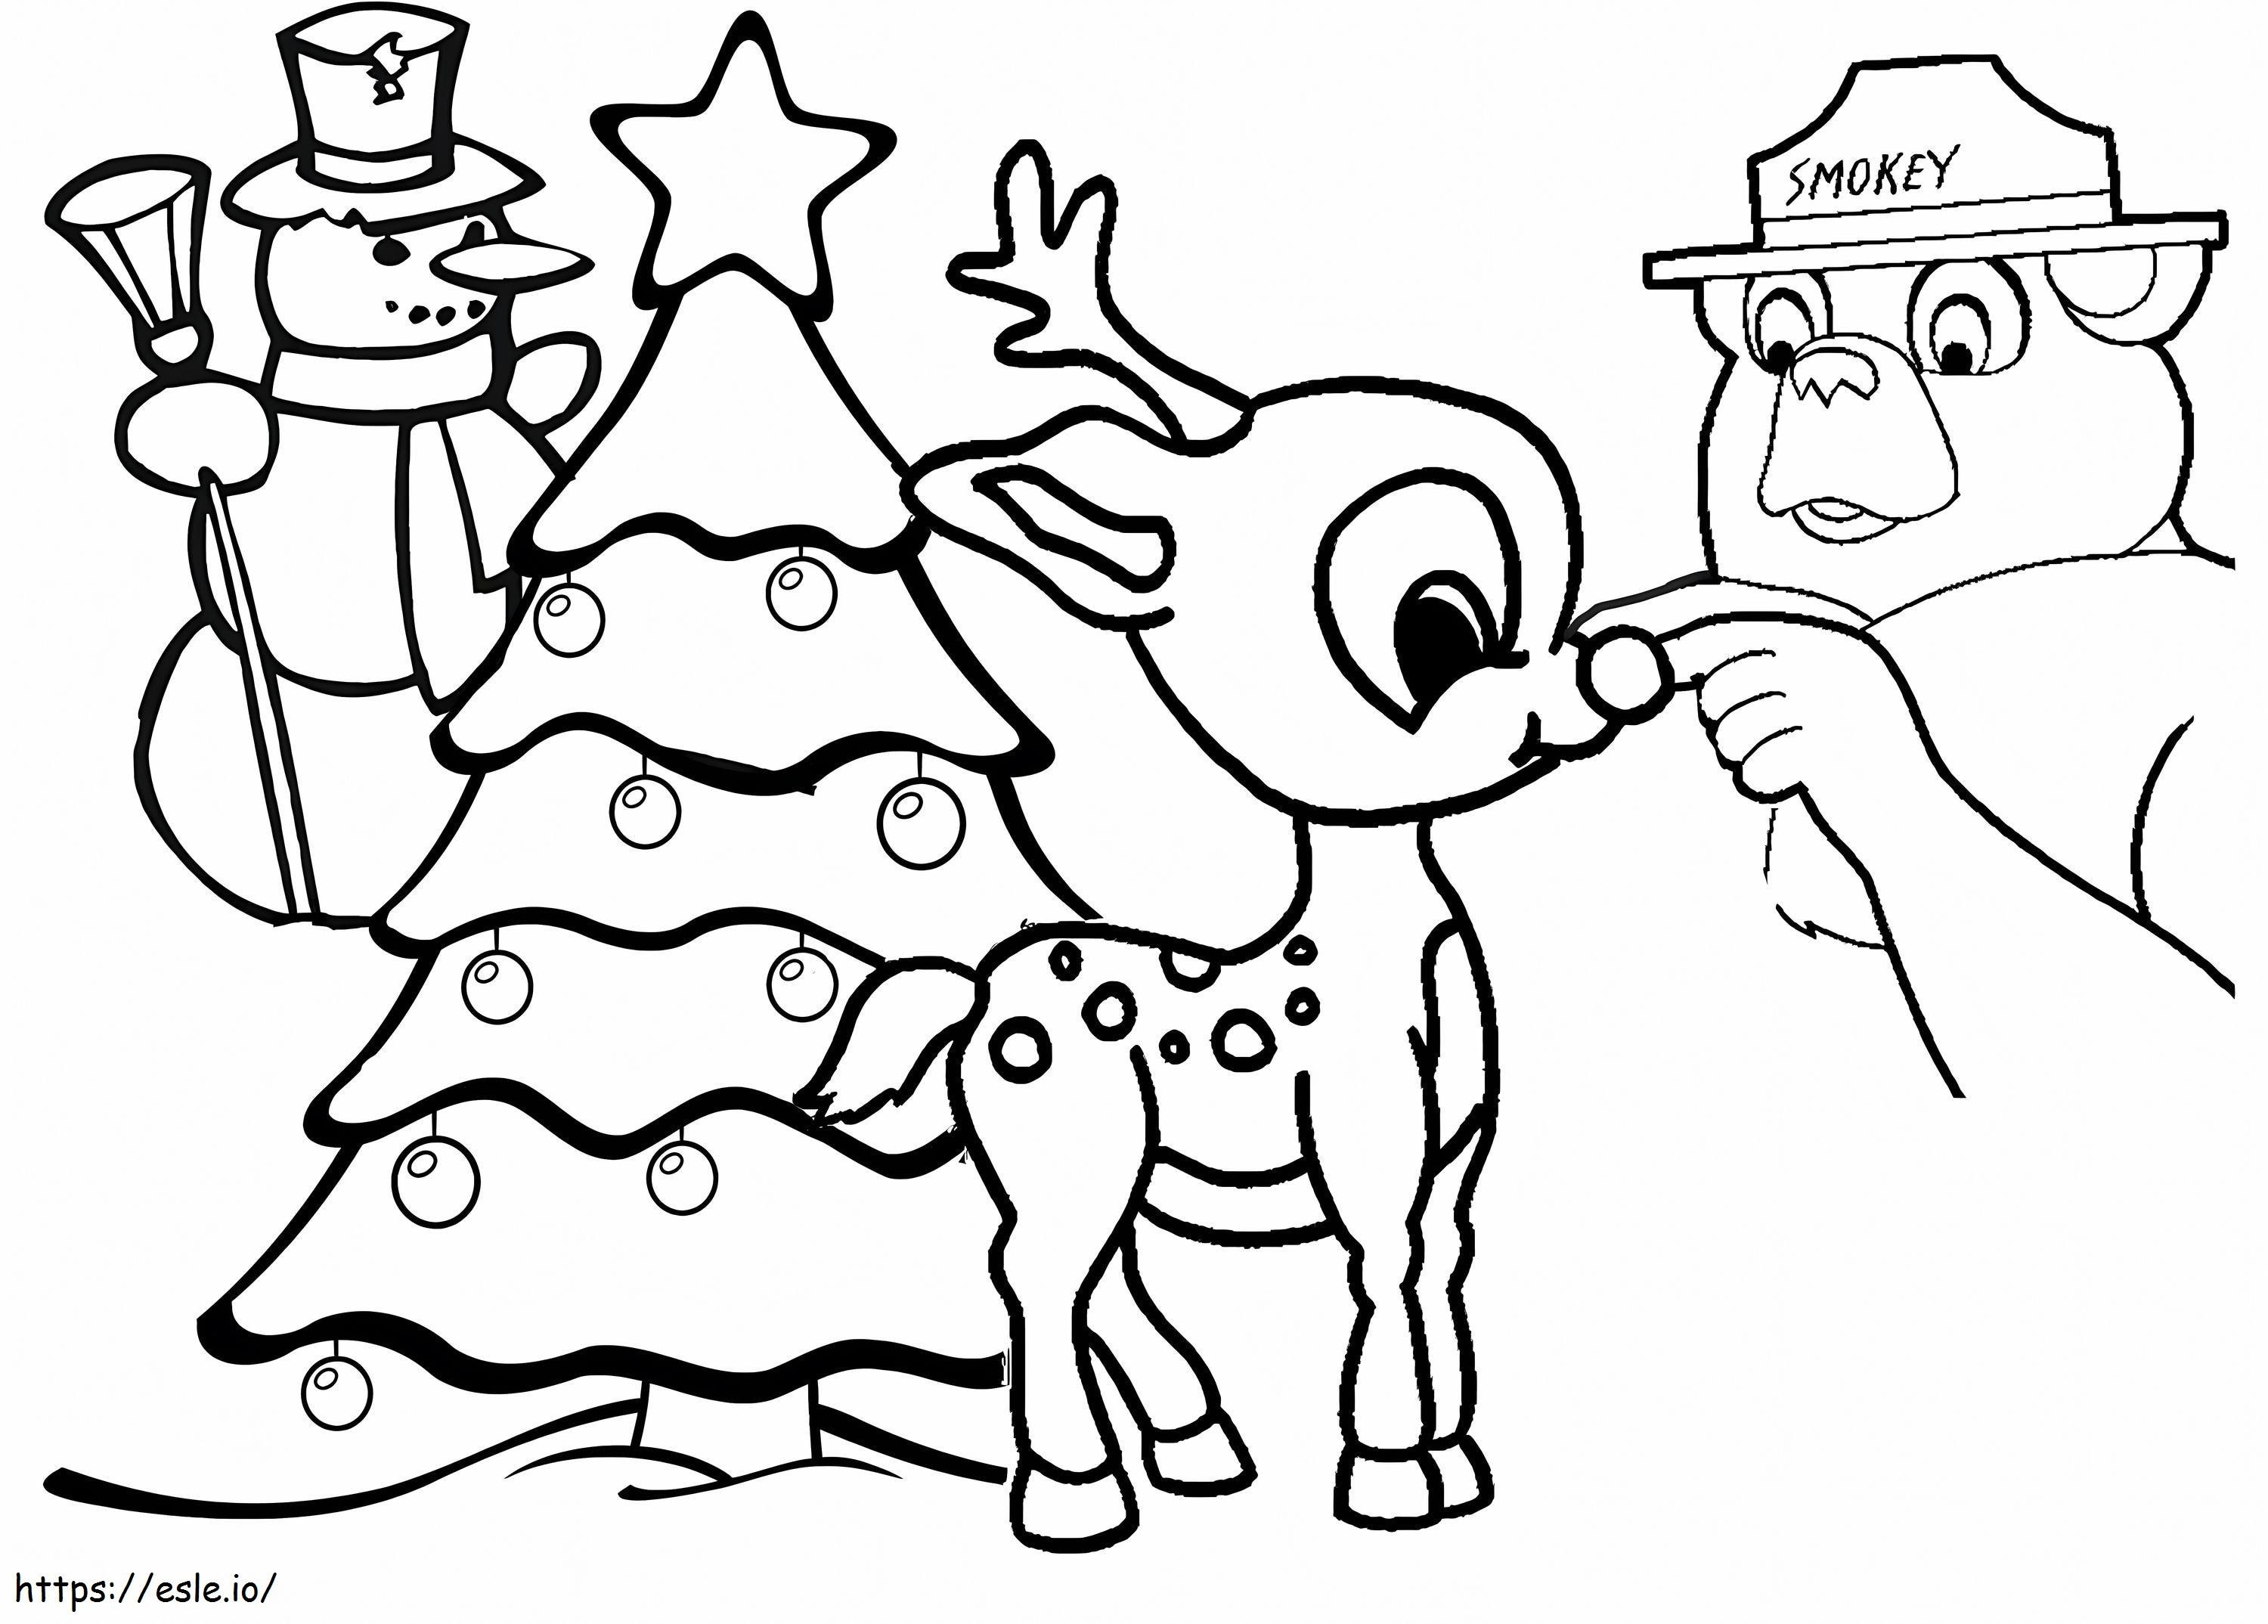 Printable Reindeer coloring page